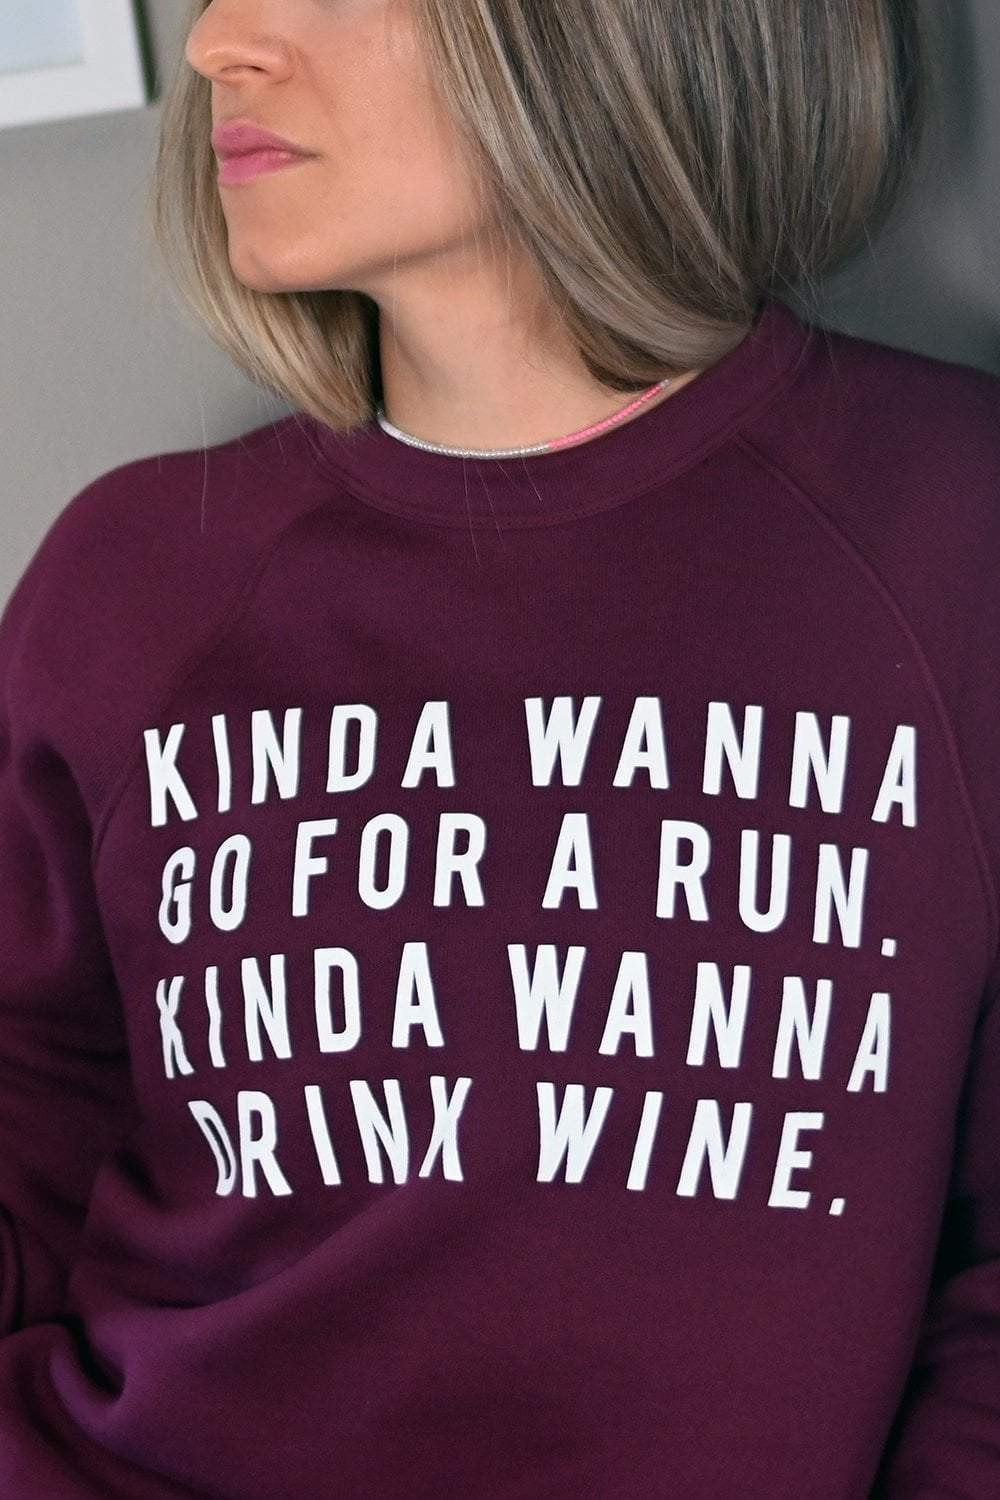 Kinda Wanna Go For a Run, Kinda Wanna Drink Wine Sweatshirt - Sarah Marie Design Studio